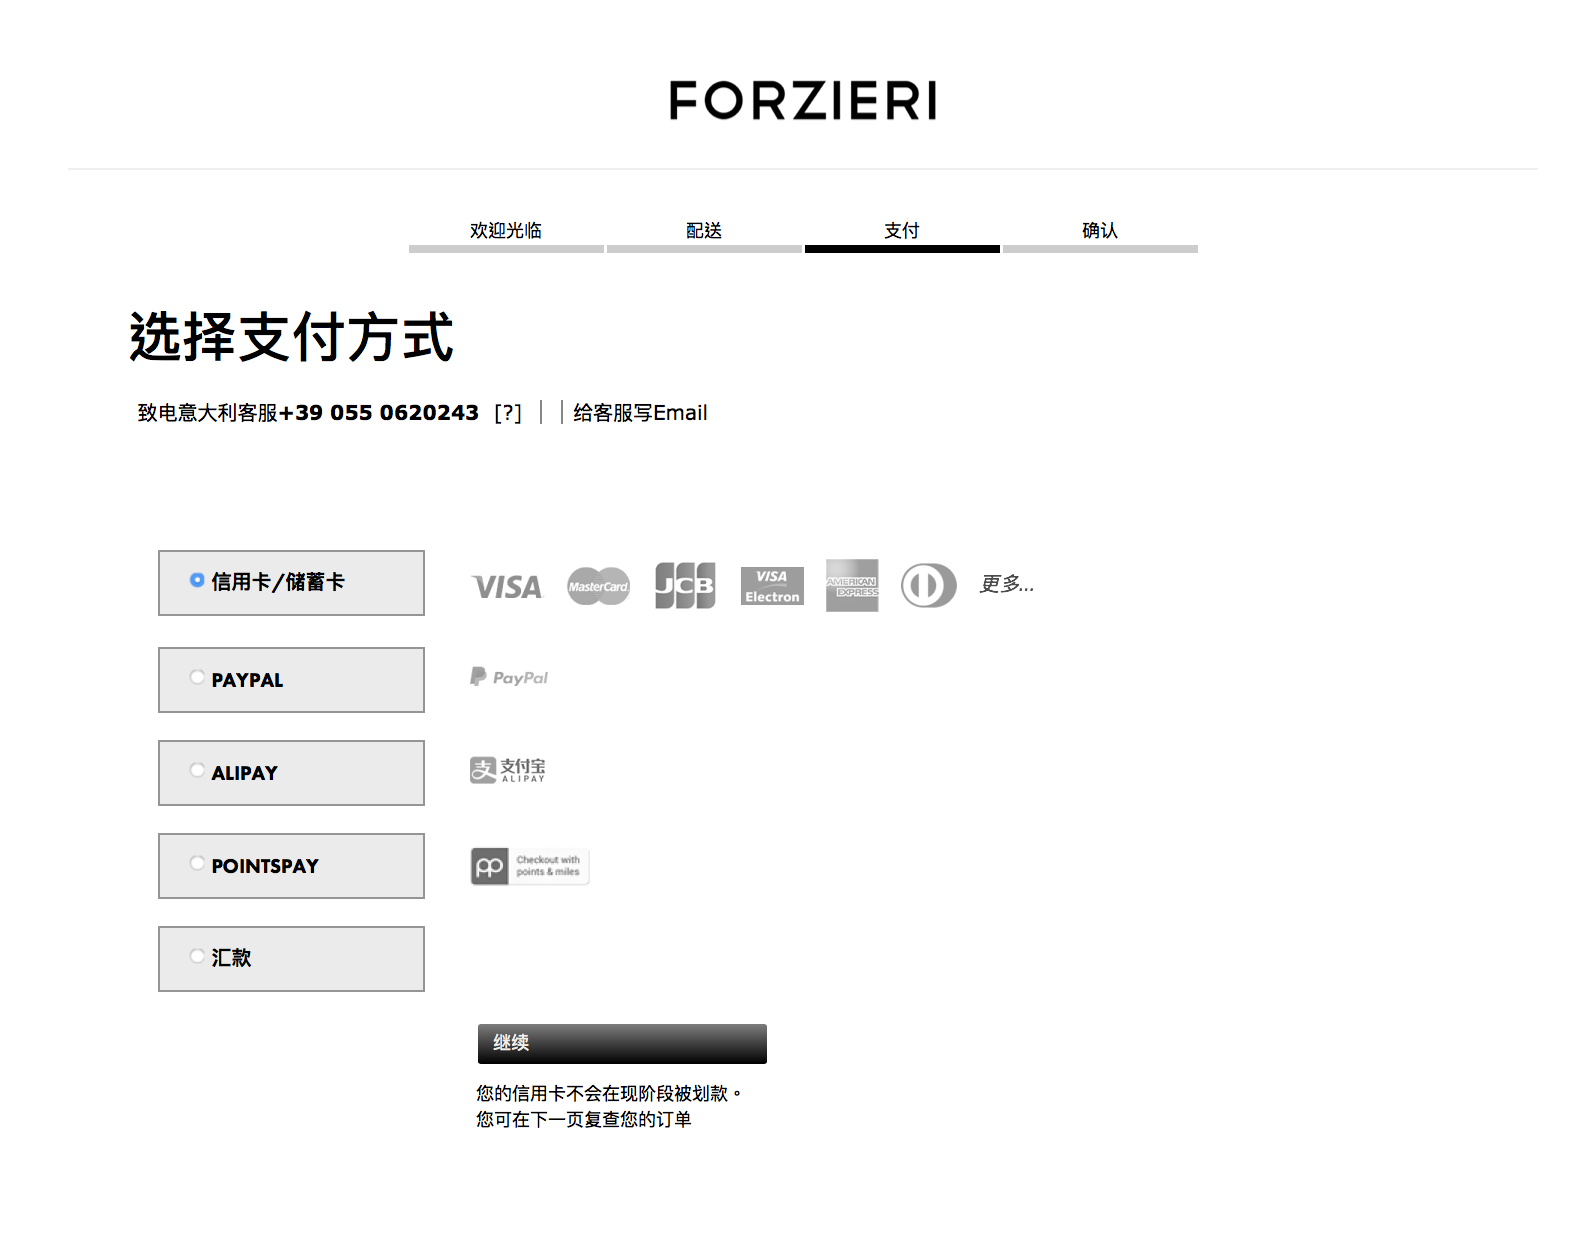 [教學文] Forzieri 網站介紹購物教學及限時專屬折扣碼分享